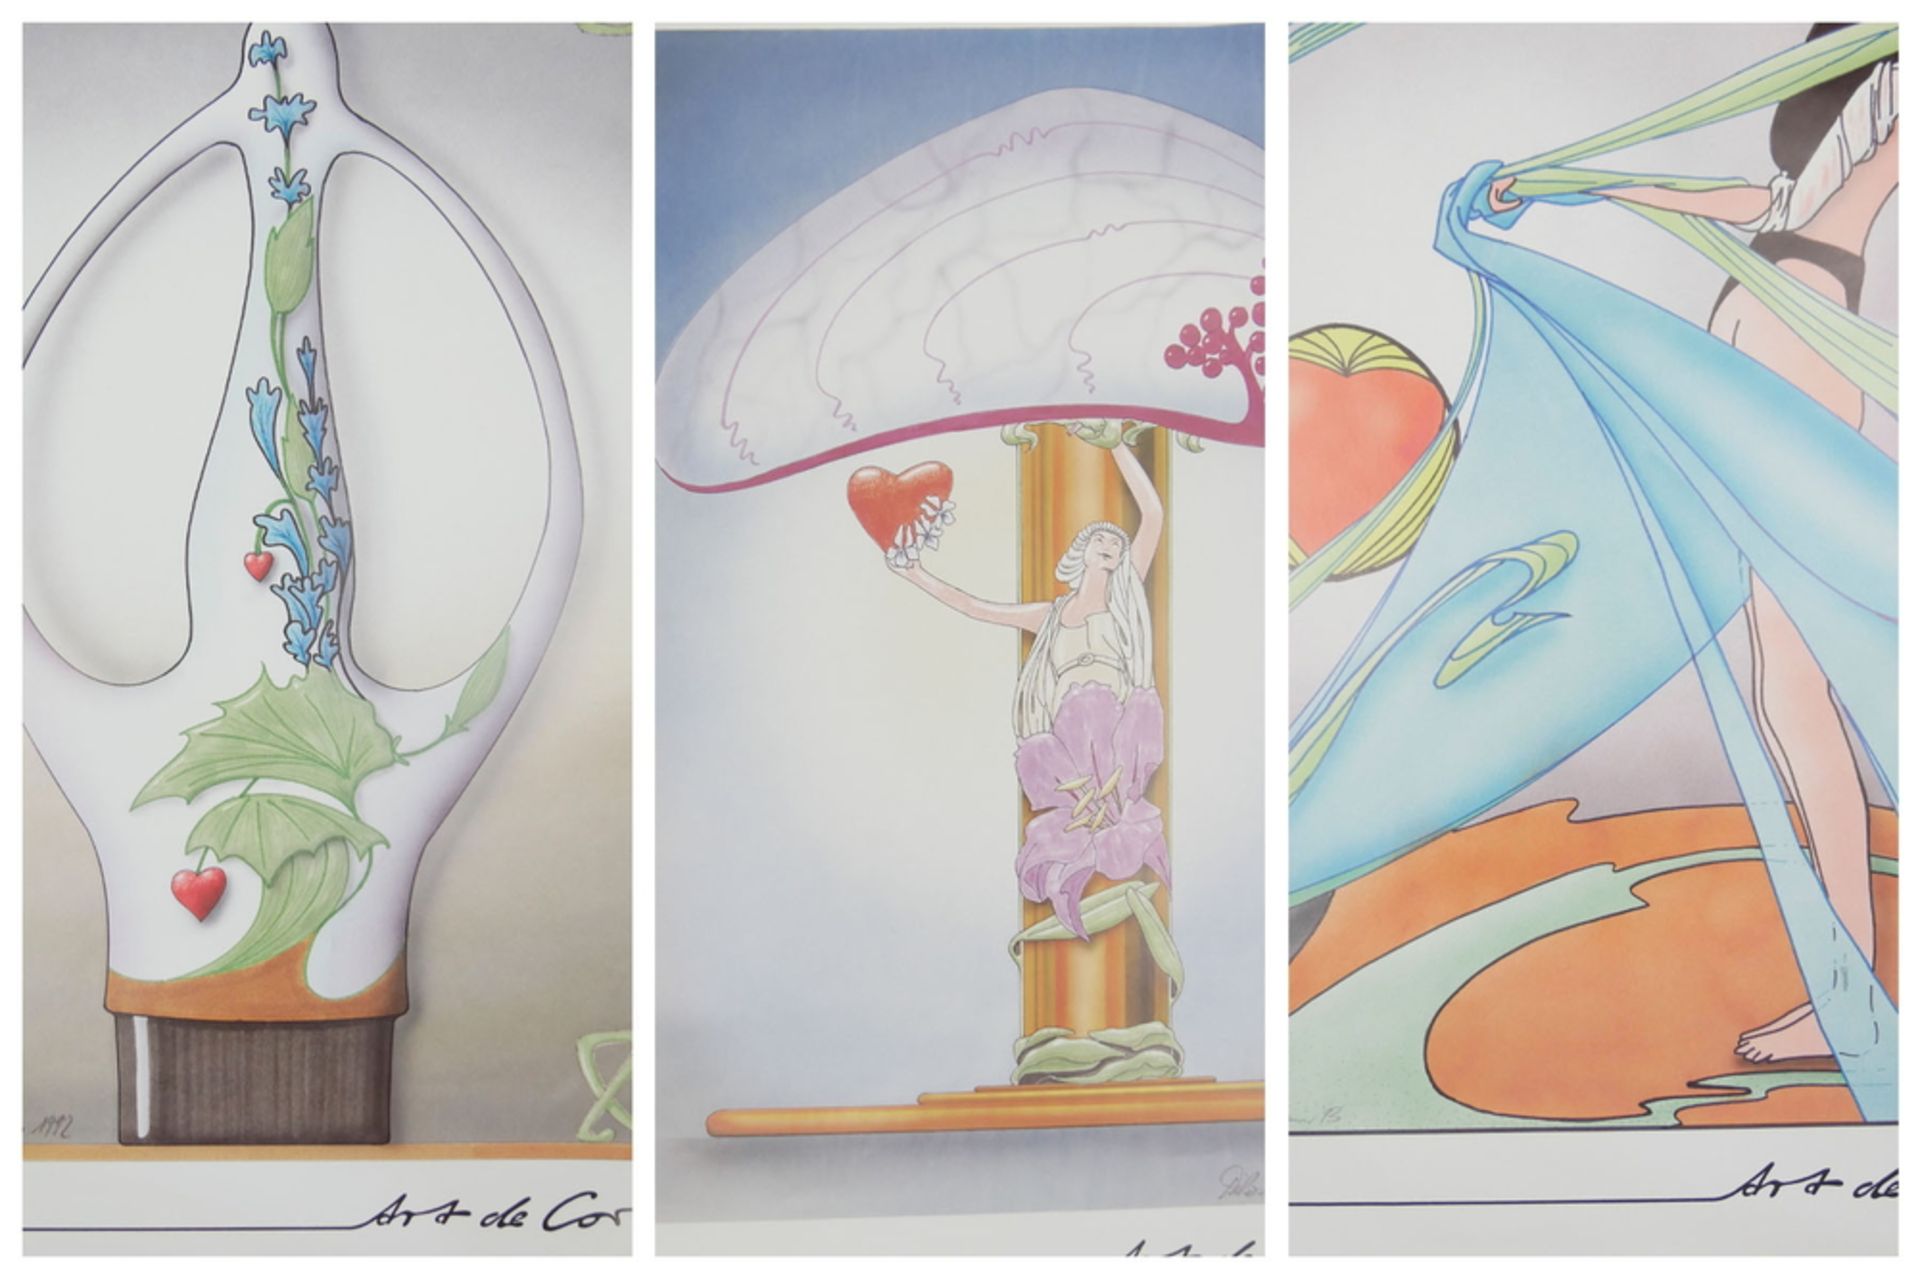 3 Farb-Drucke aus der Edition "Art de Cor" von Dirk O. Roth (* 1952, in Solingen geboren), mit